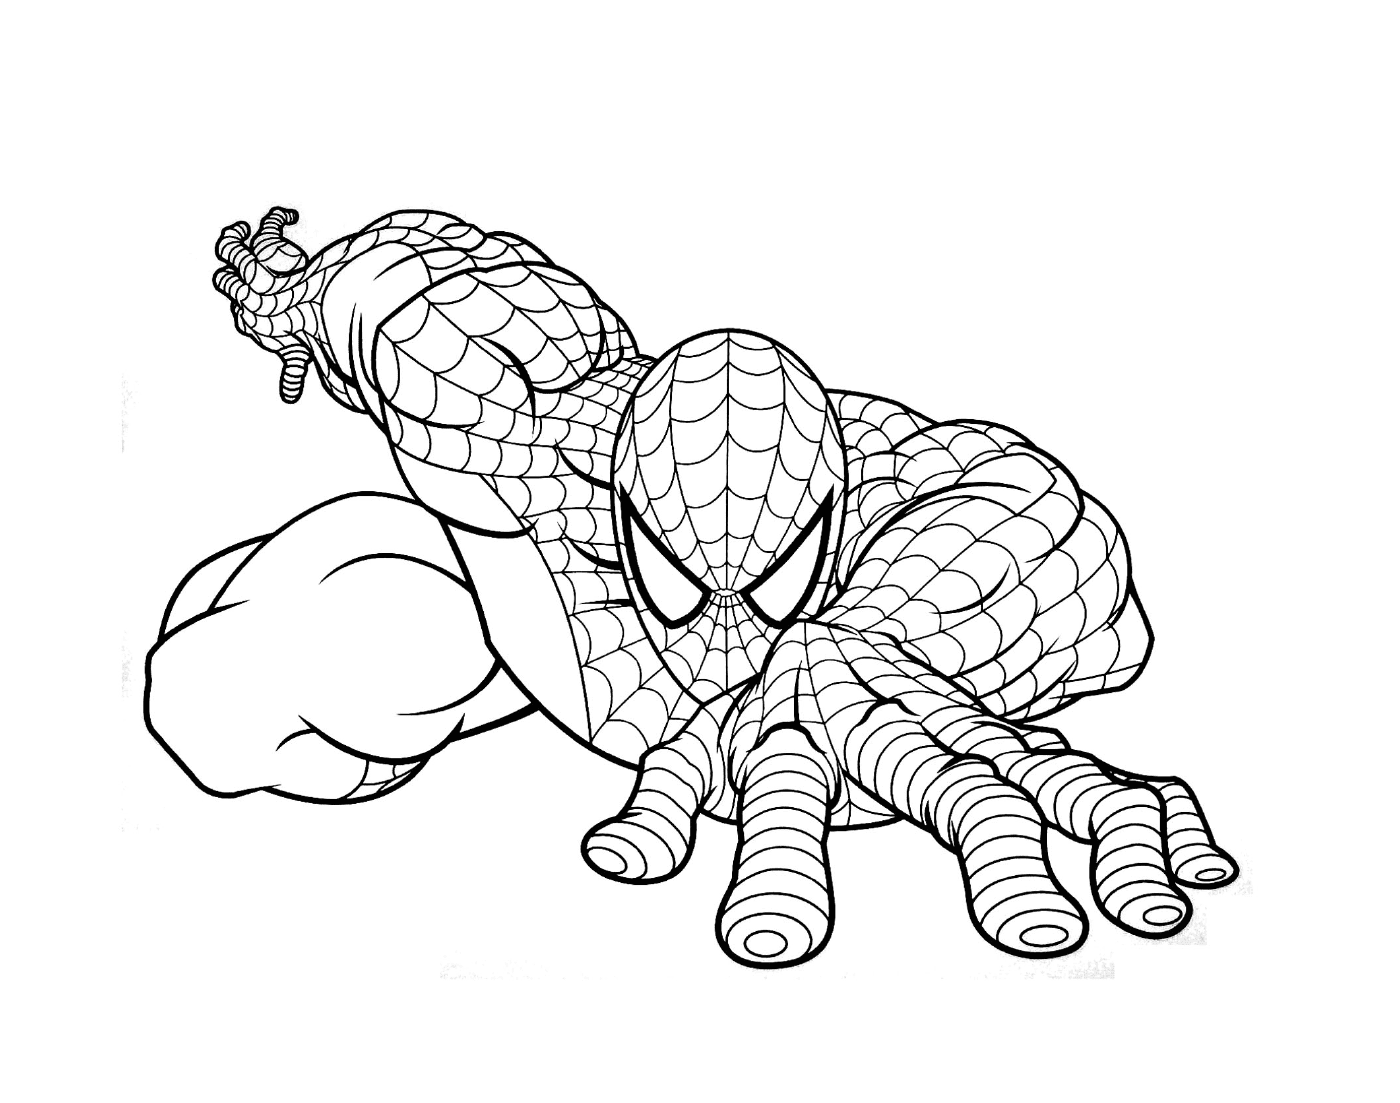  Homem-Aranha representado no desenho 